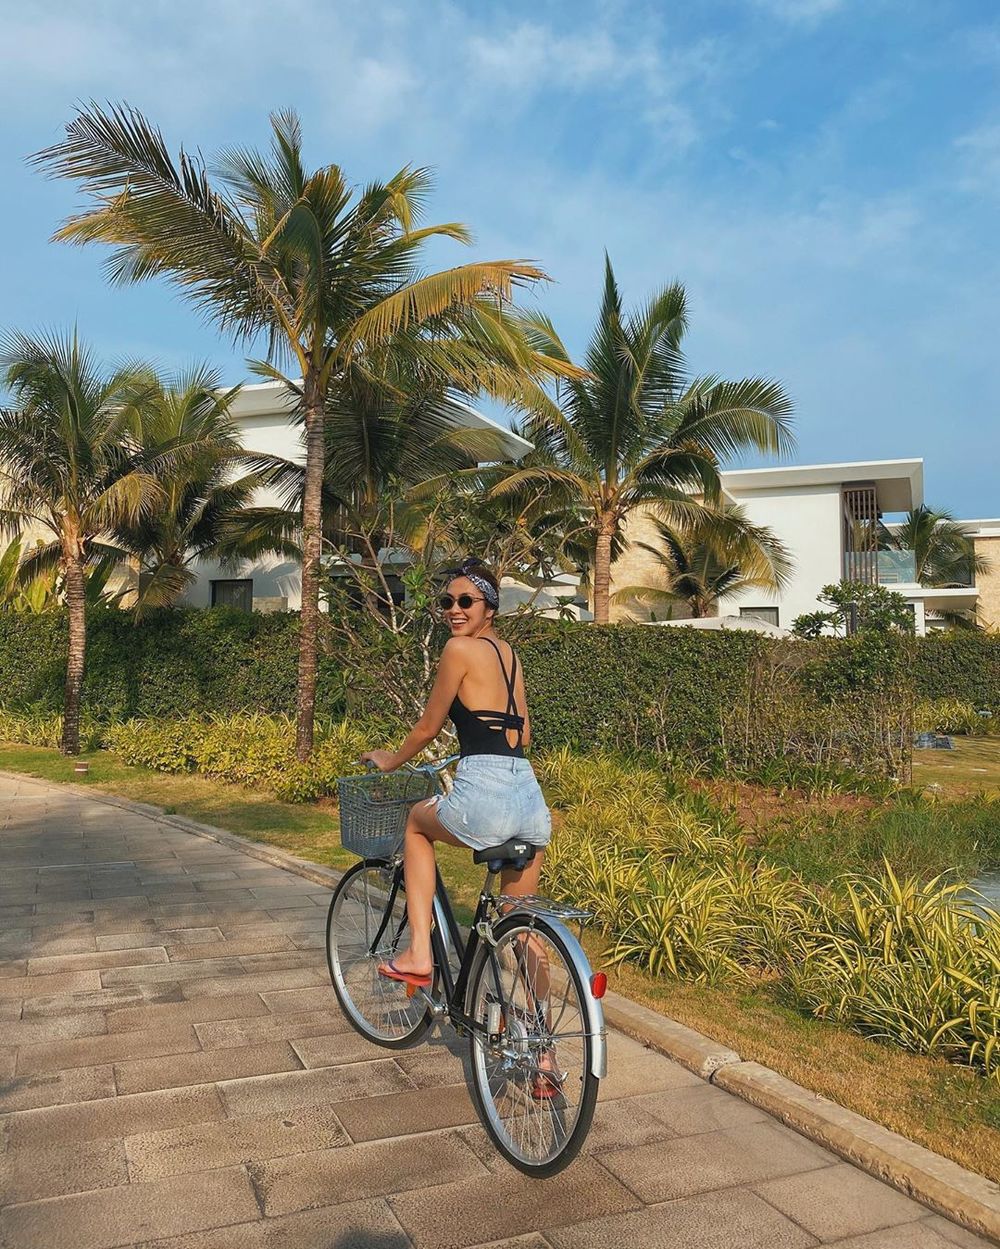  
Tăng Thanh Hà diện bộ cánh thoải mái, đạp xe trong khu nghỉ dưỡng. (Ảnh: Instagram nhân vật)